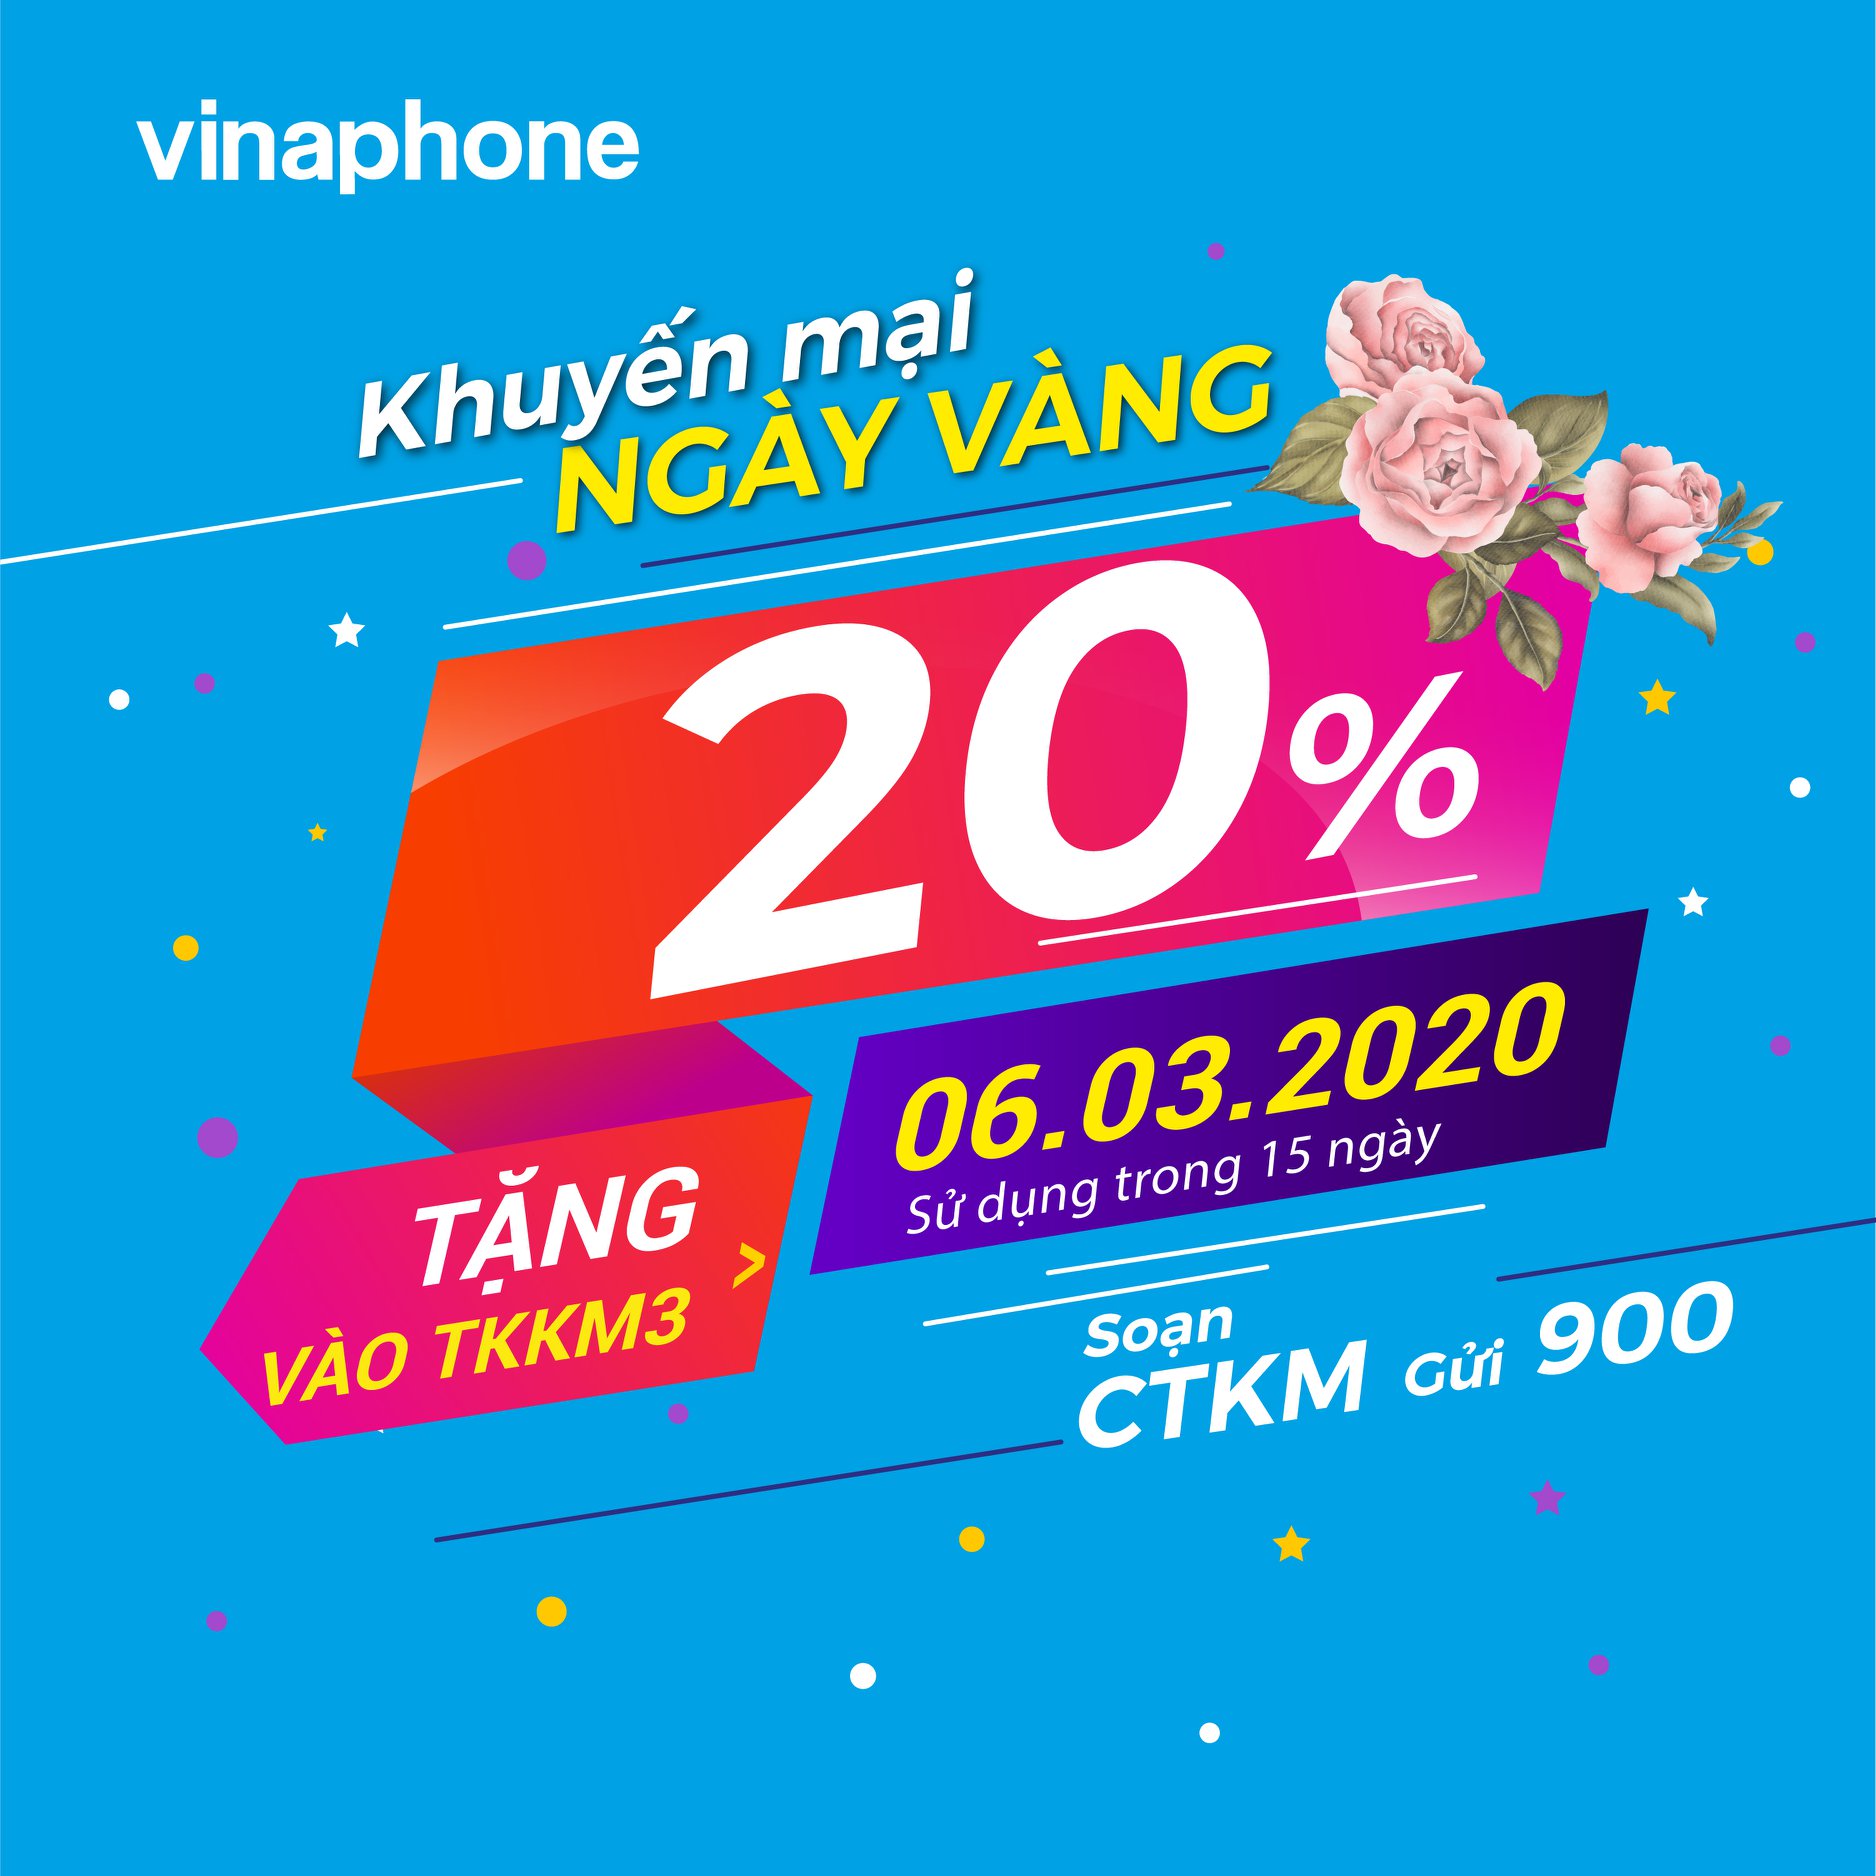 Vinaphone khuyến mãi ngày vàng 6/3/2020 tặng 20% giá trị thẻ nạp